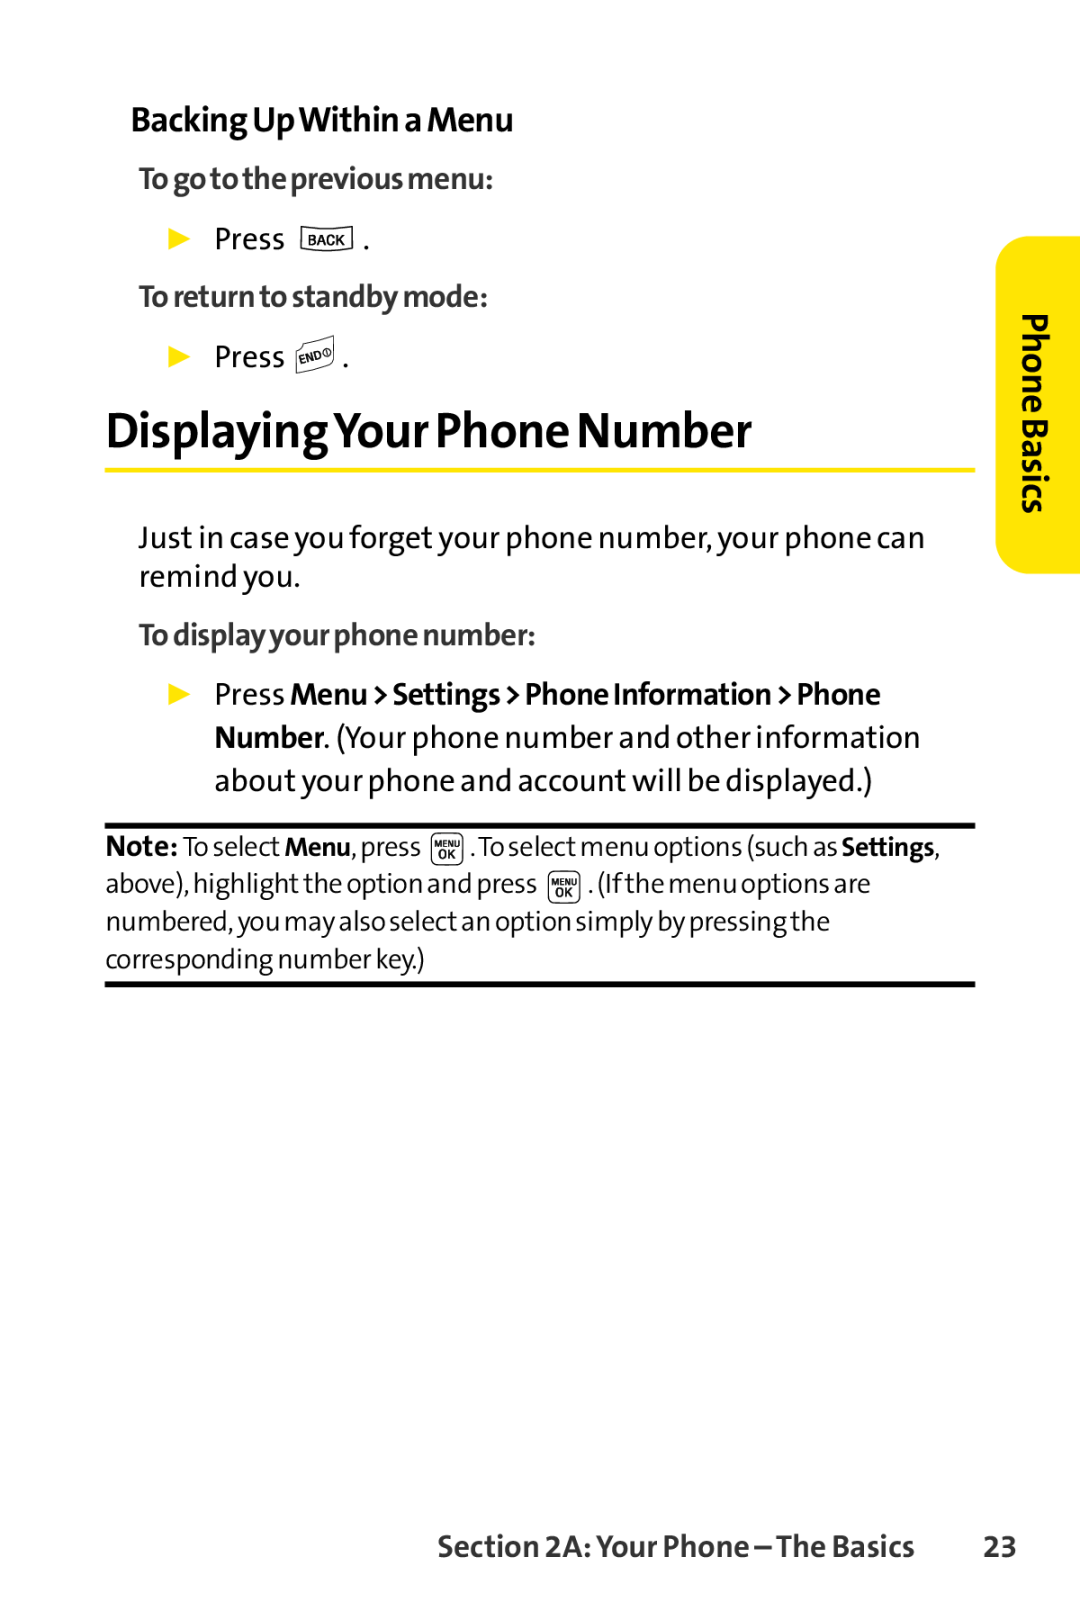 Sprint Nextel LX160 manual DisplayingYour Phone Number, BackingUpWithinaMenu, Togotothepreviousmenu, Toreturntostandbymode 